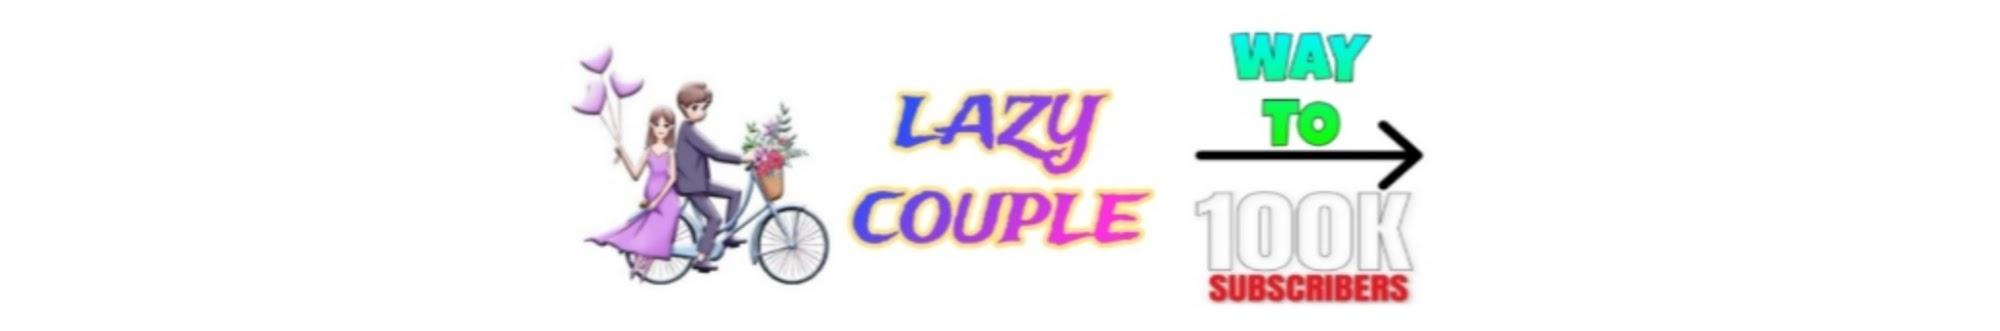 LAZY COUPLE